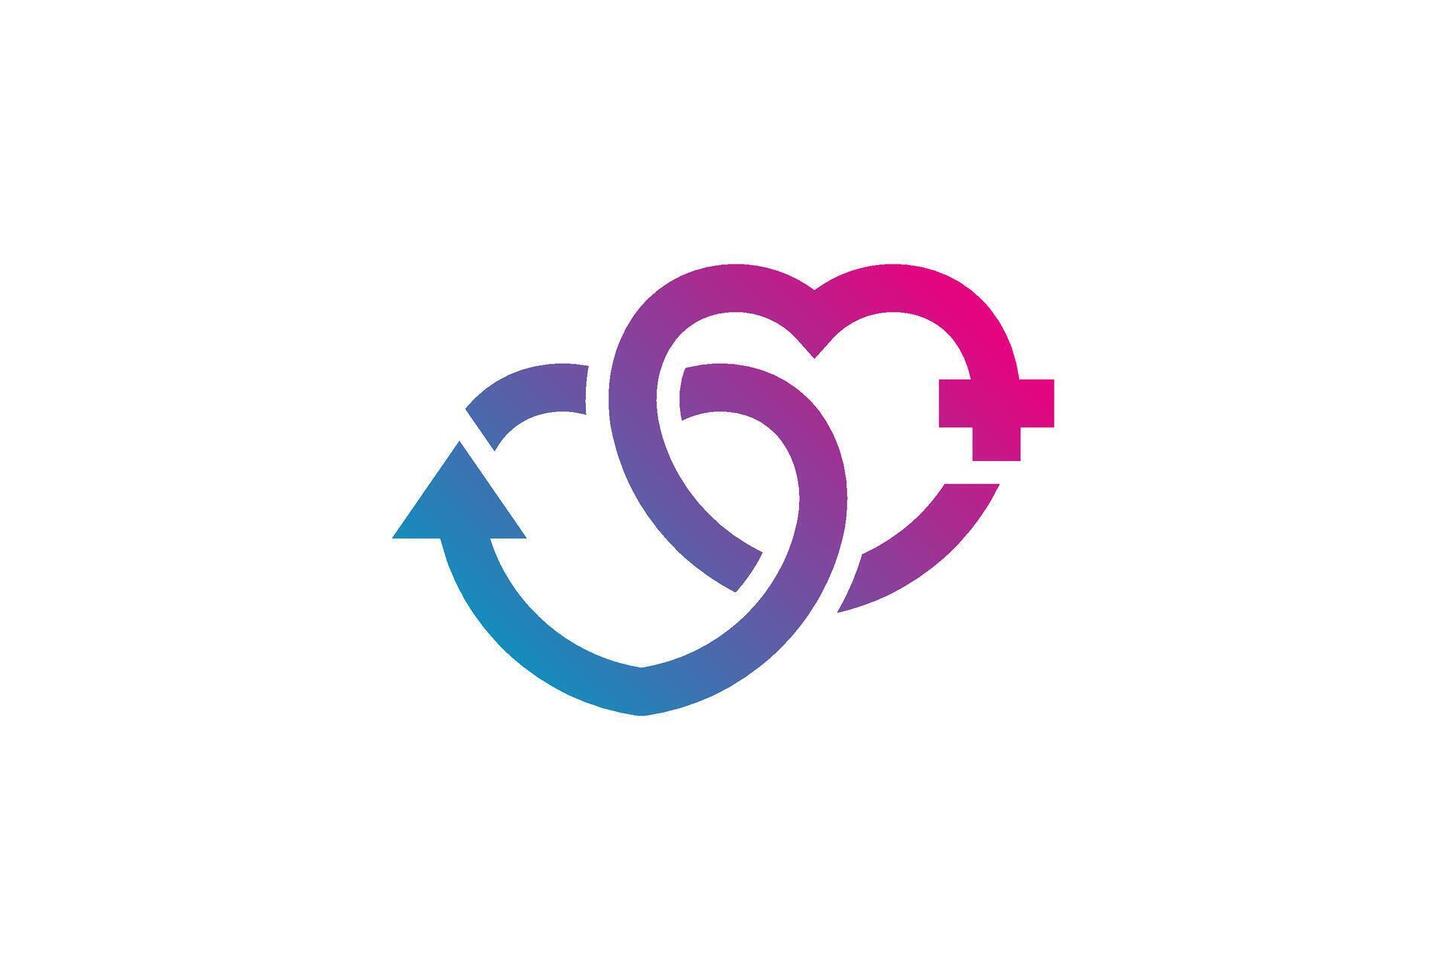 geslacht symbool logo inspiratie, liefde teken, mannetje en vrouw seks teken , vlak ontwerp logo sjabloon element, illustratie vector